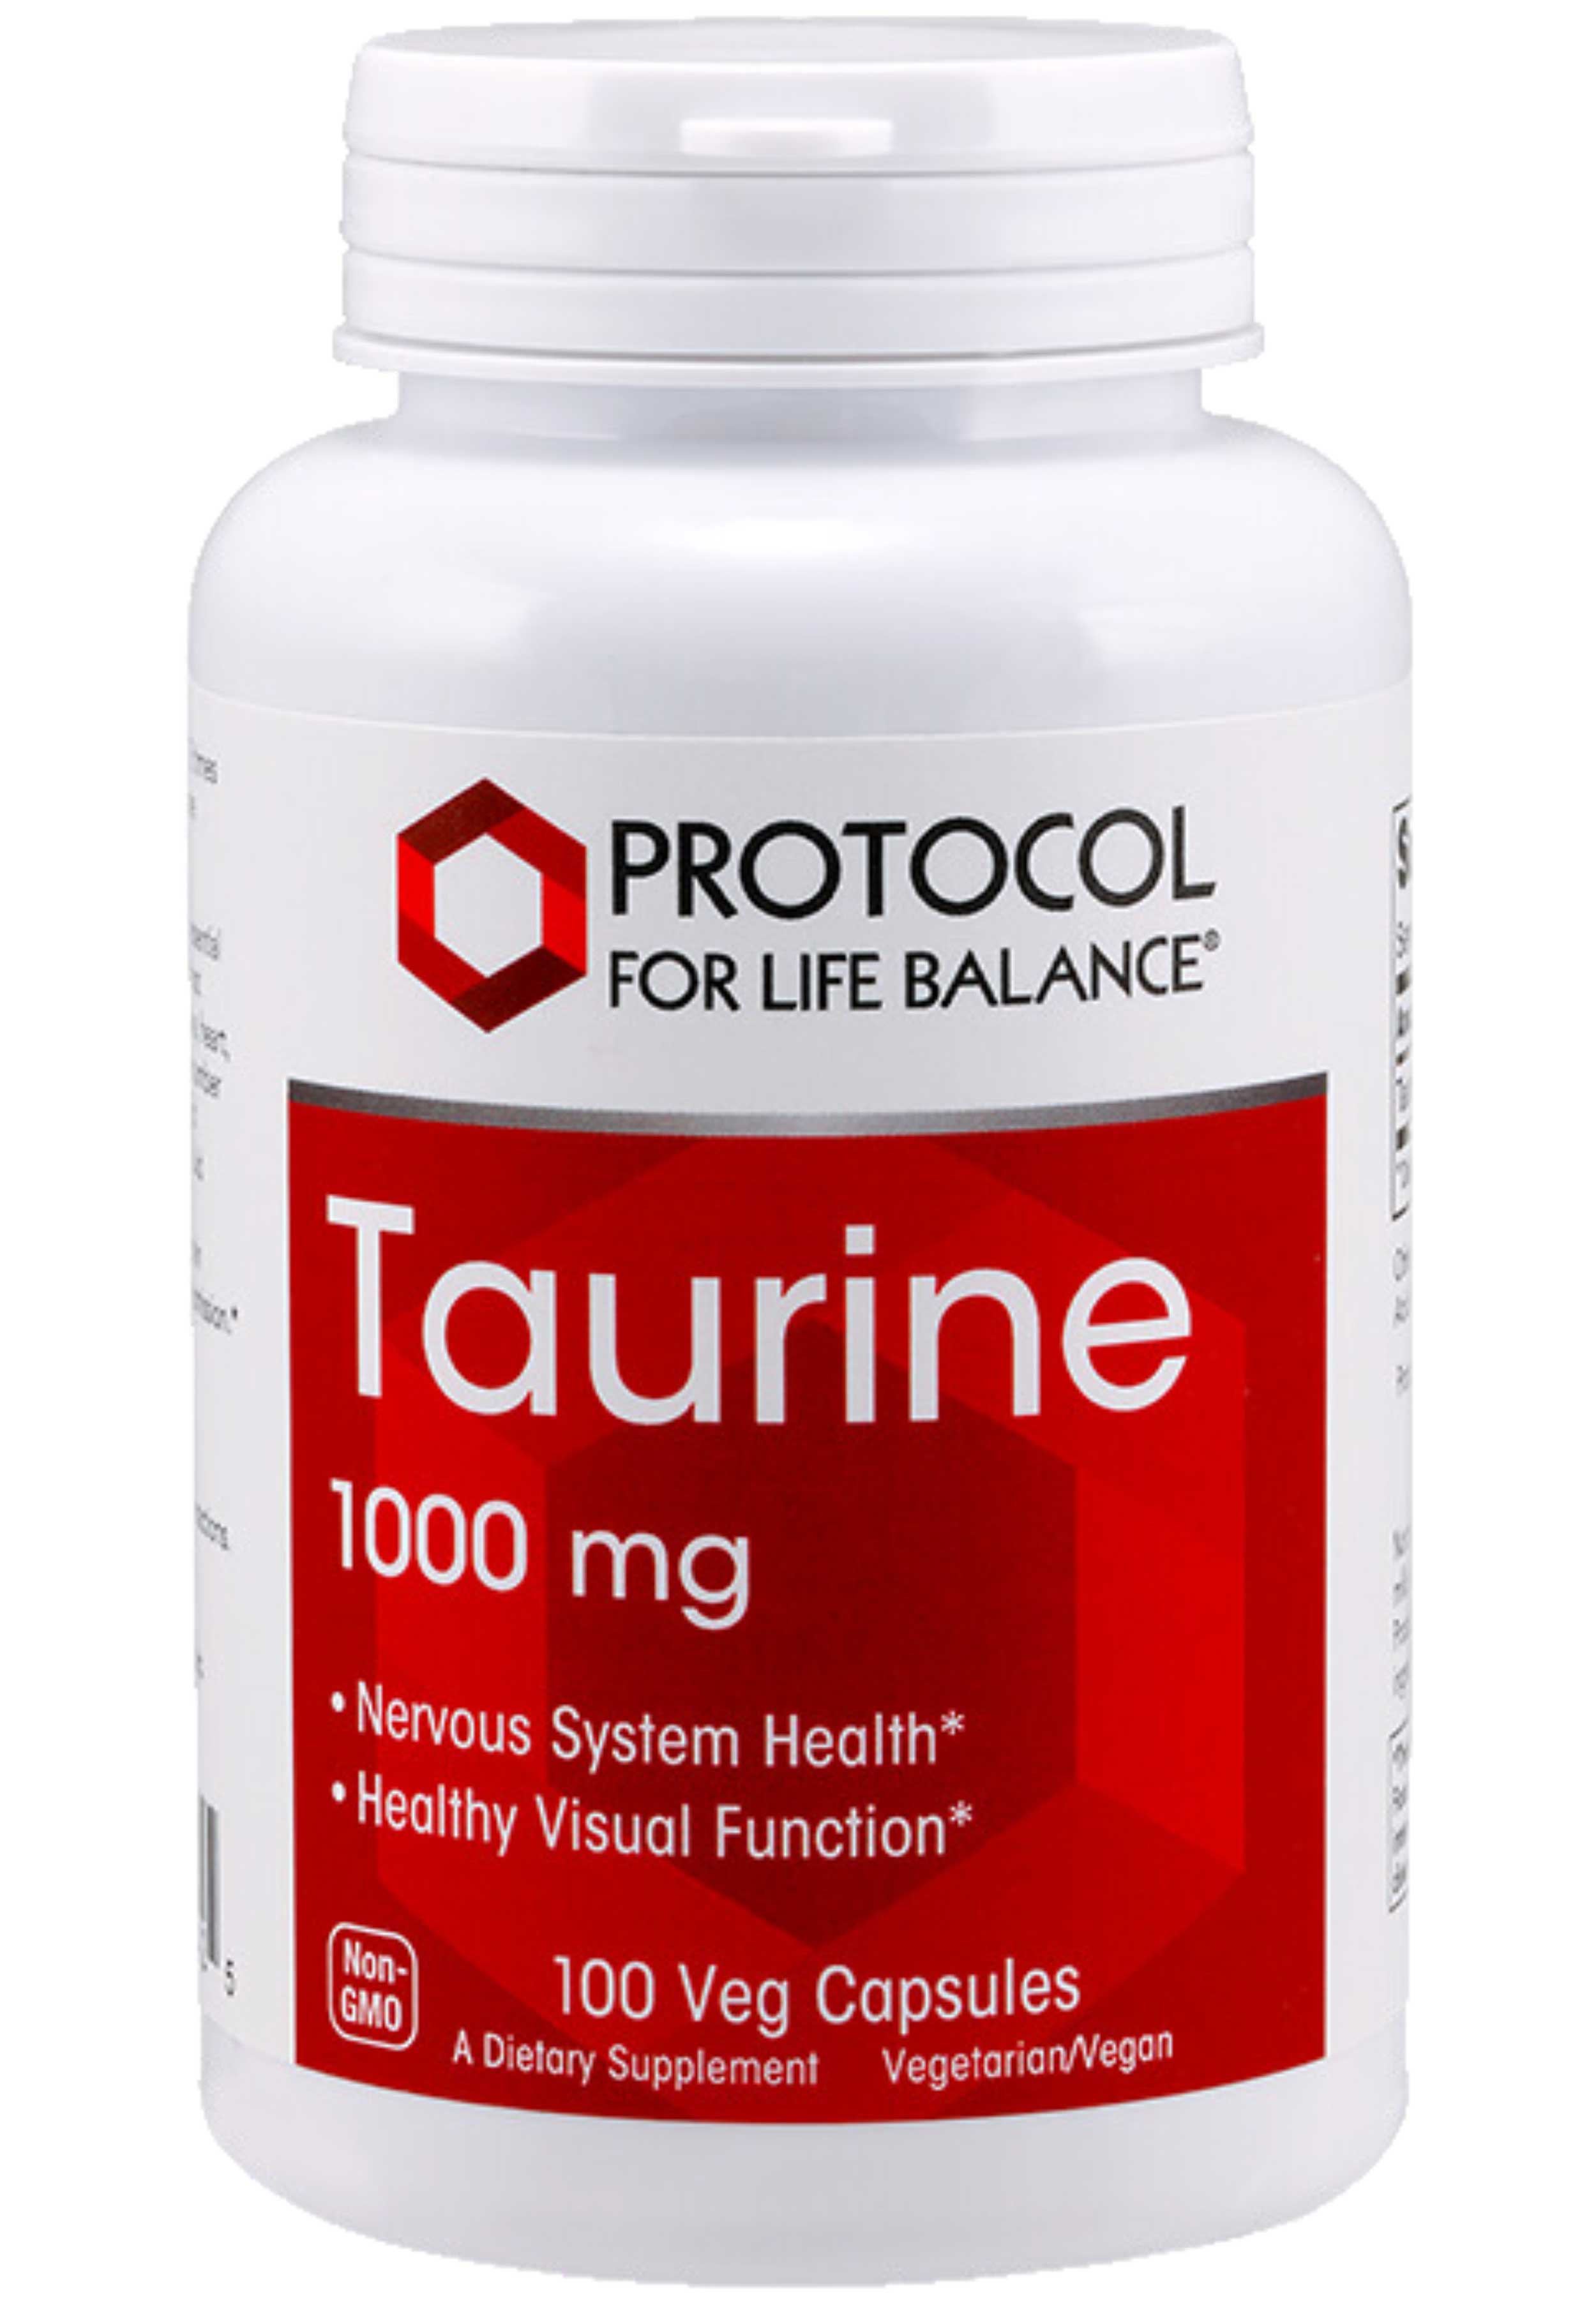 Protocol for Life Balance Taurine 1000 mg